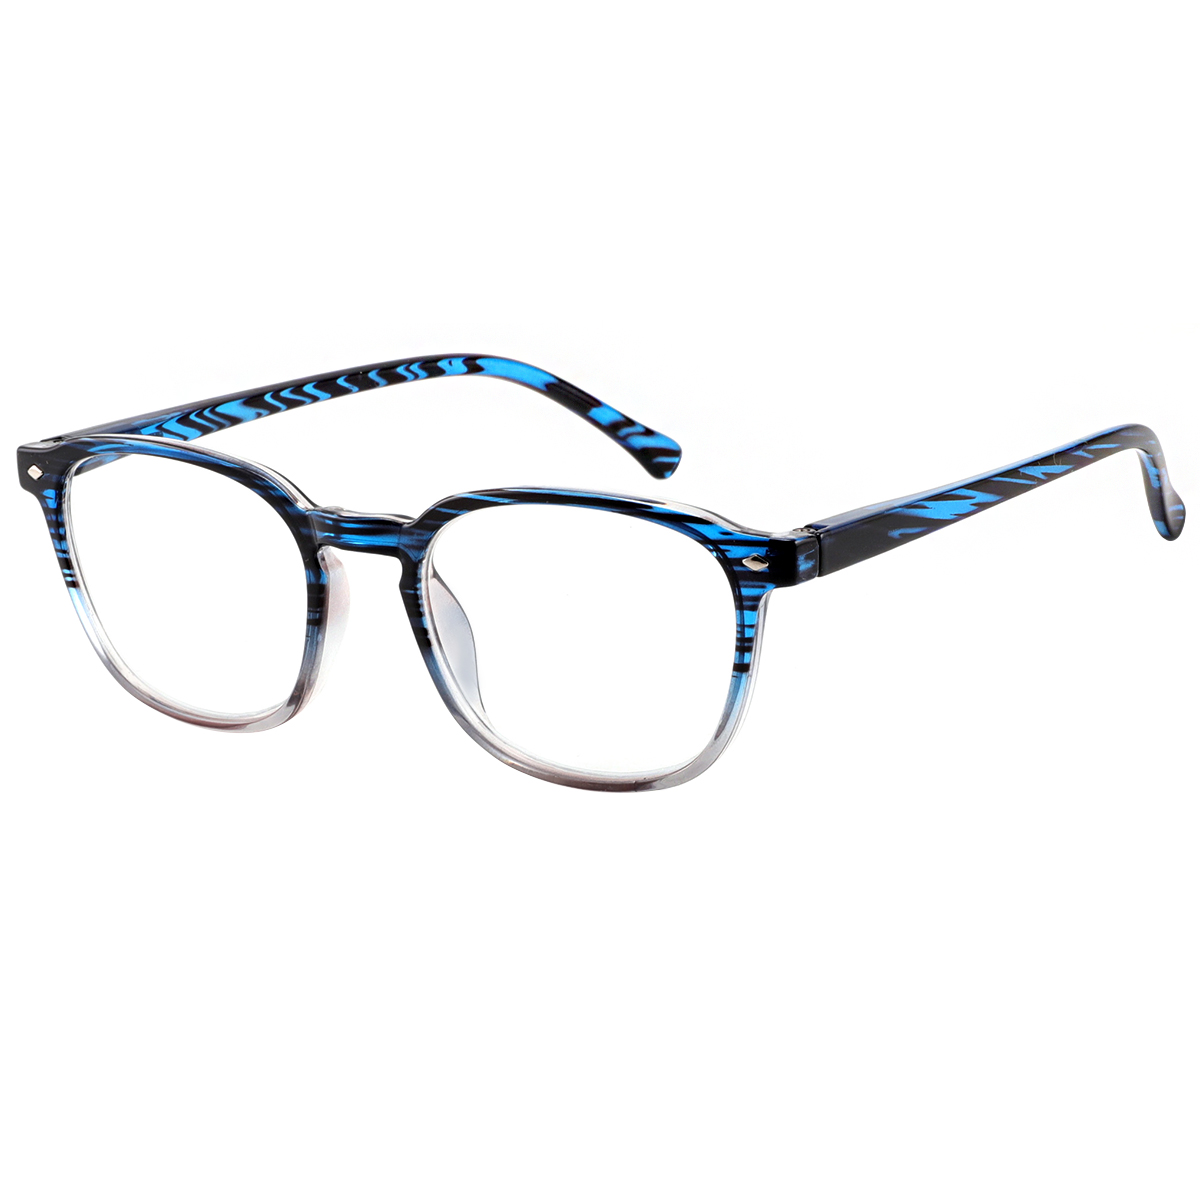 Prairie - Square Blue Reading Glasses for Men & Women